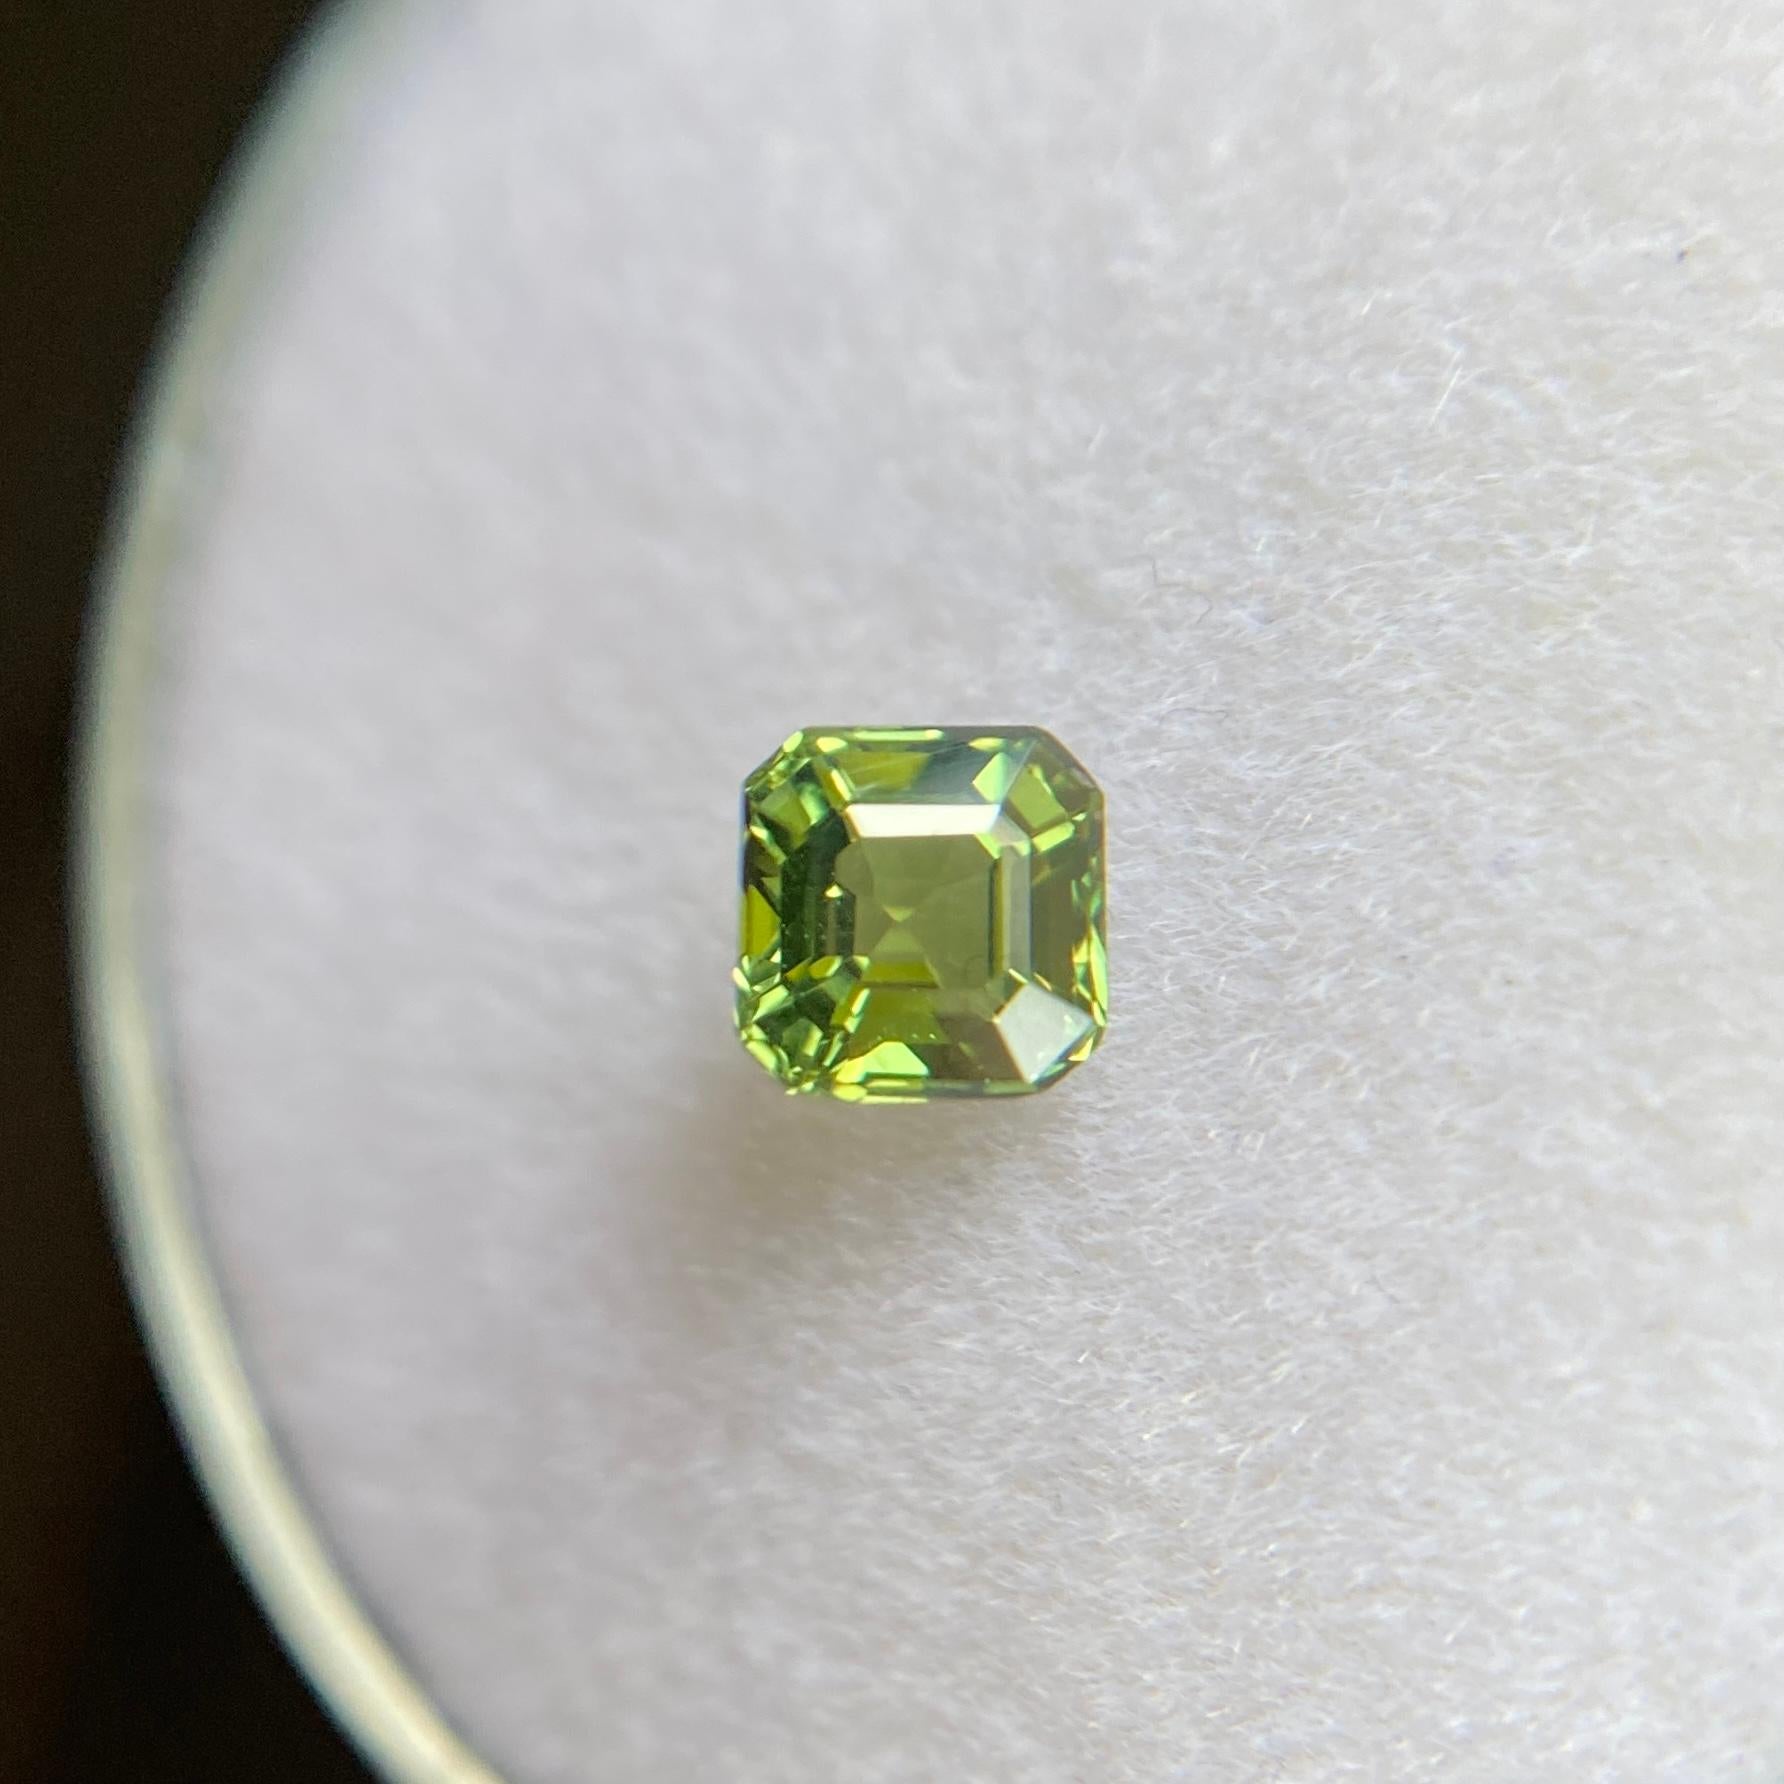 gemstone cut aka square emerald cut